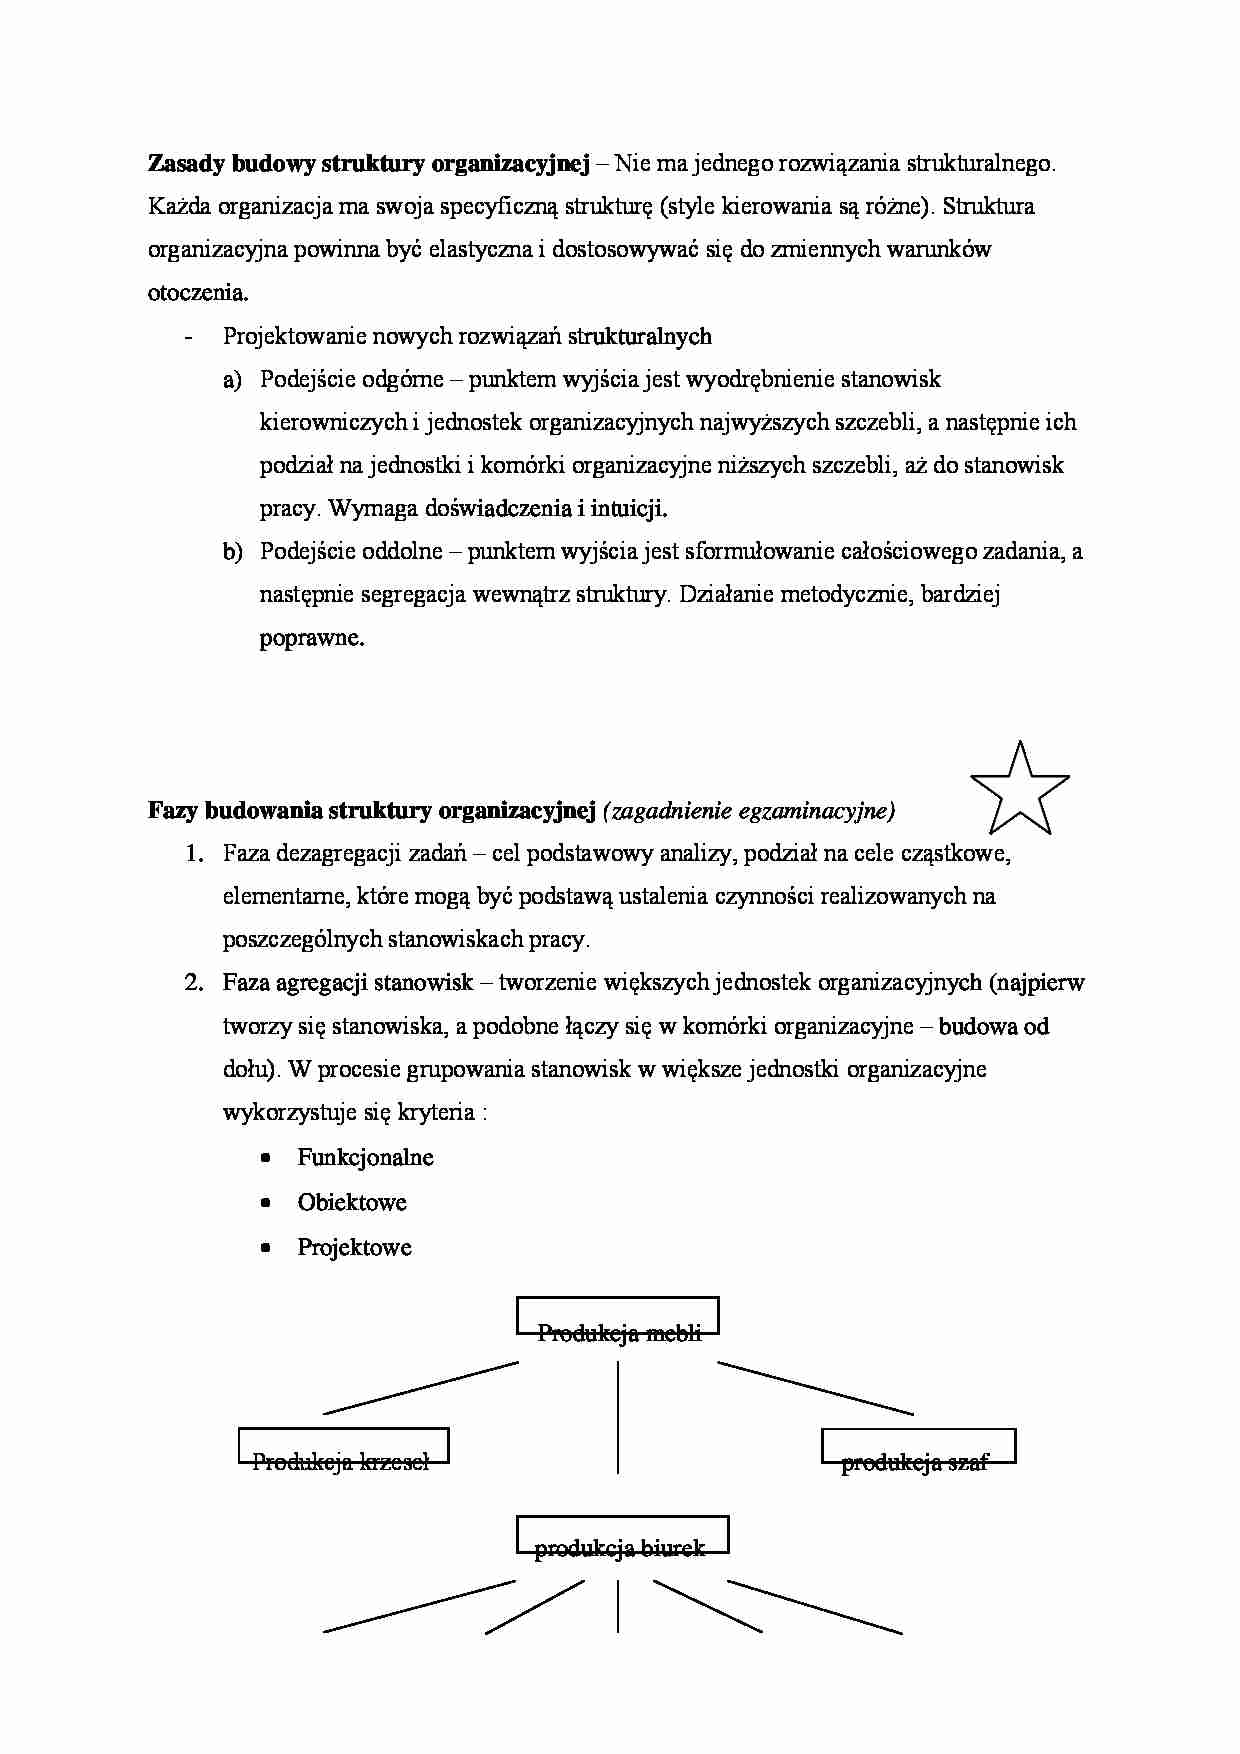 Zasady budowy struktury organizacyjnej - strona 1